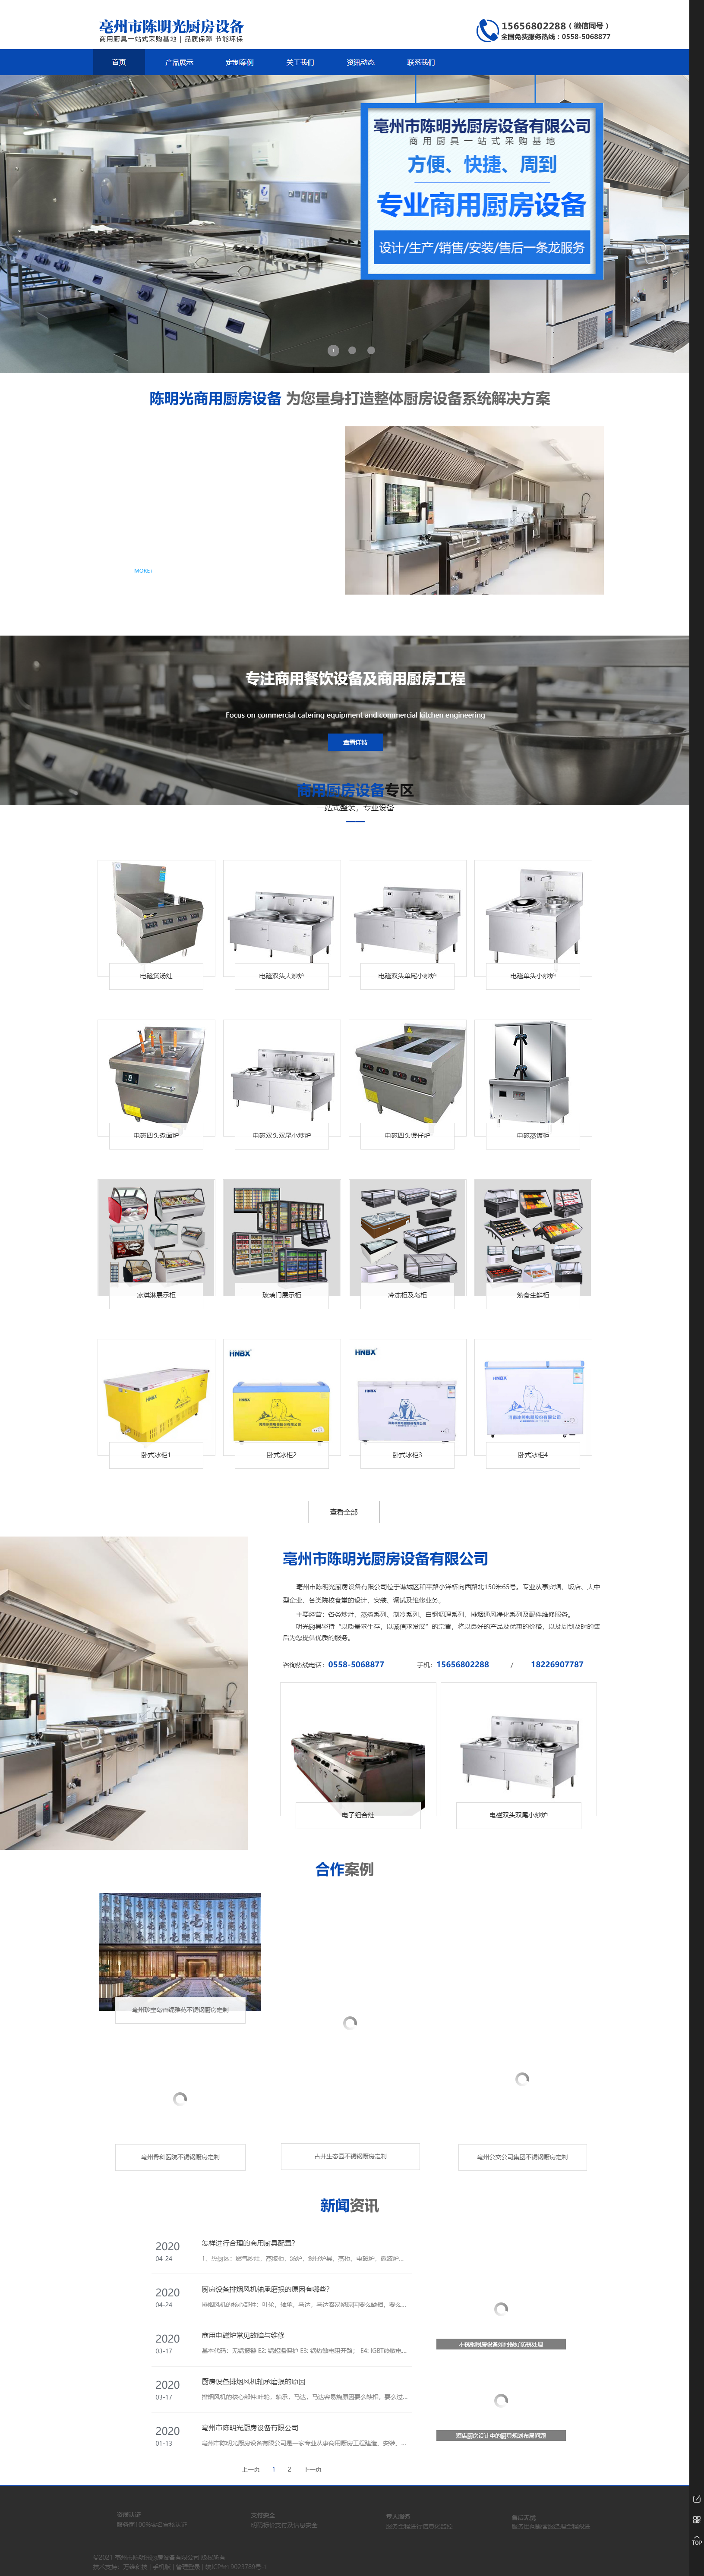 亳州市陈明光厨房设备有限公司网站案例